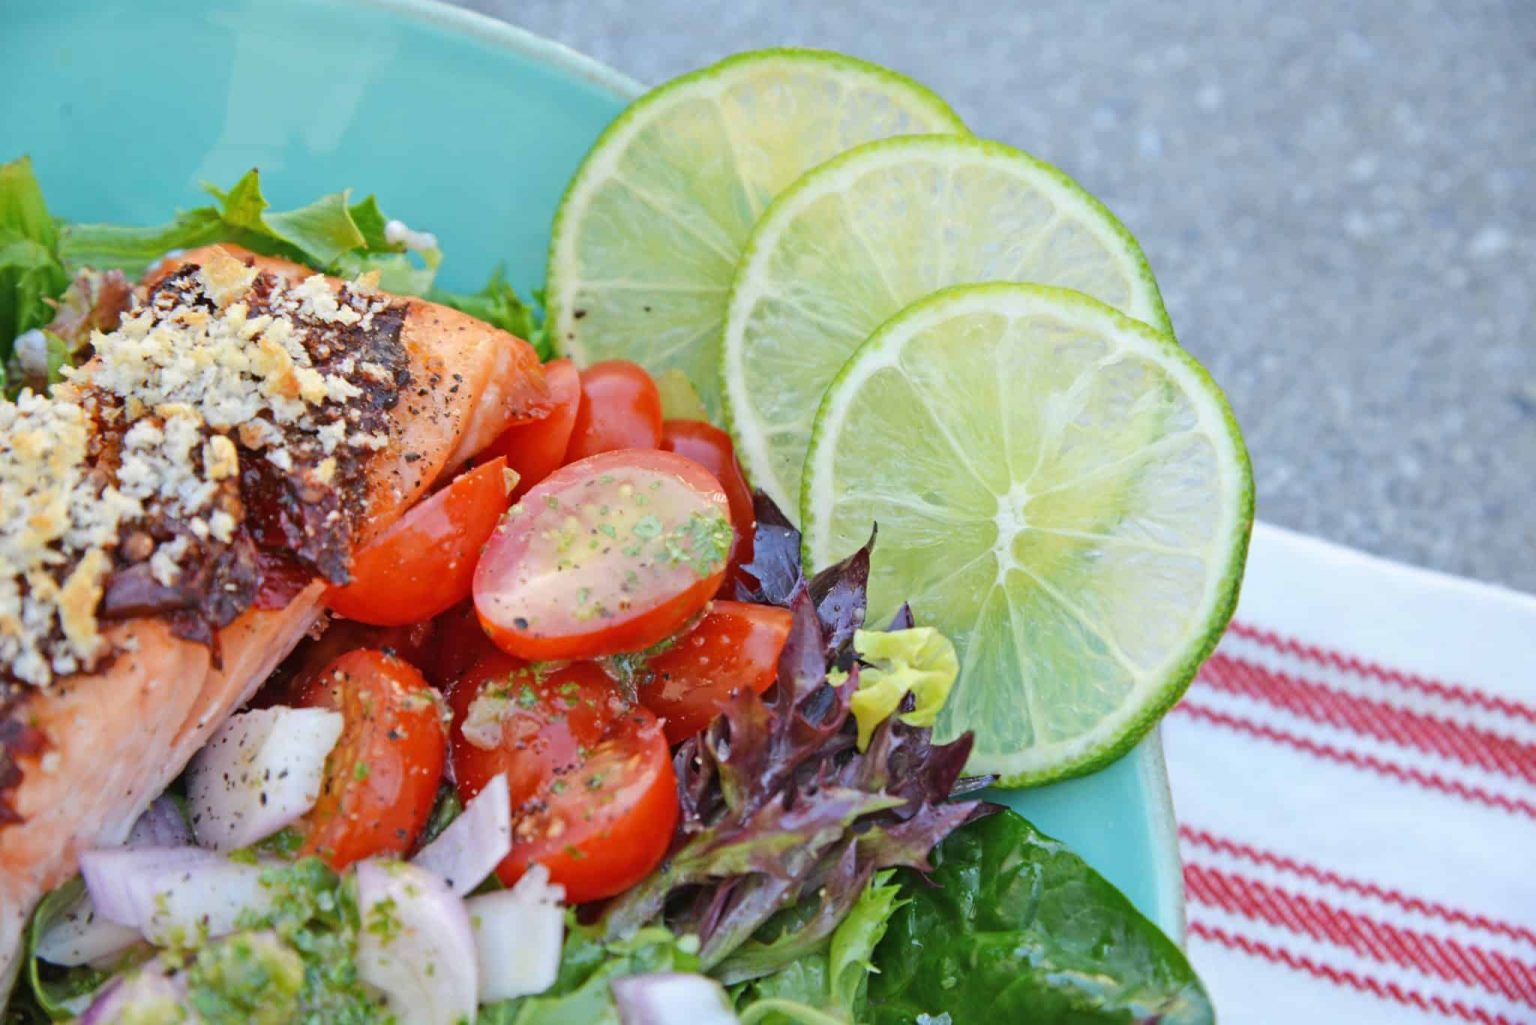 Crispy Chipotle Salmon Salad - A Delectable Salmon Salad Recipe